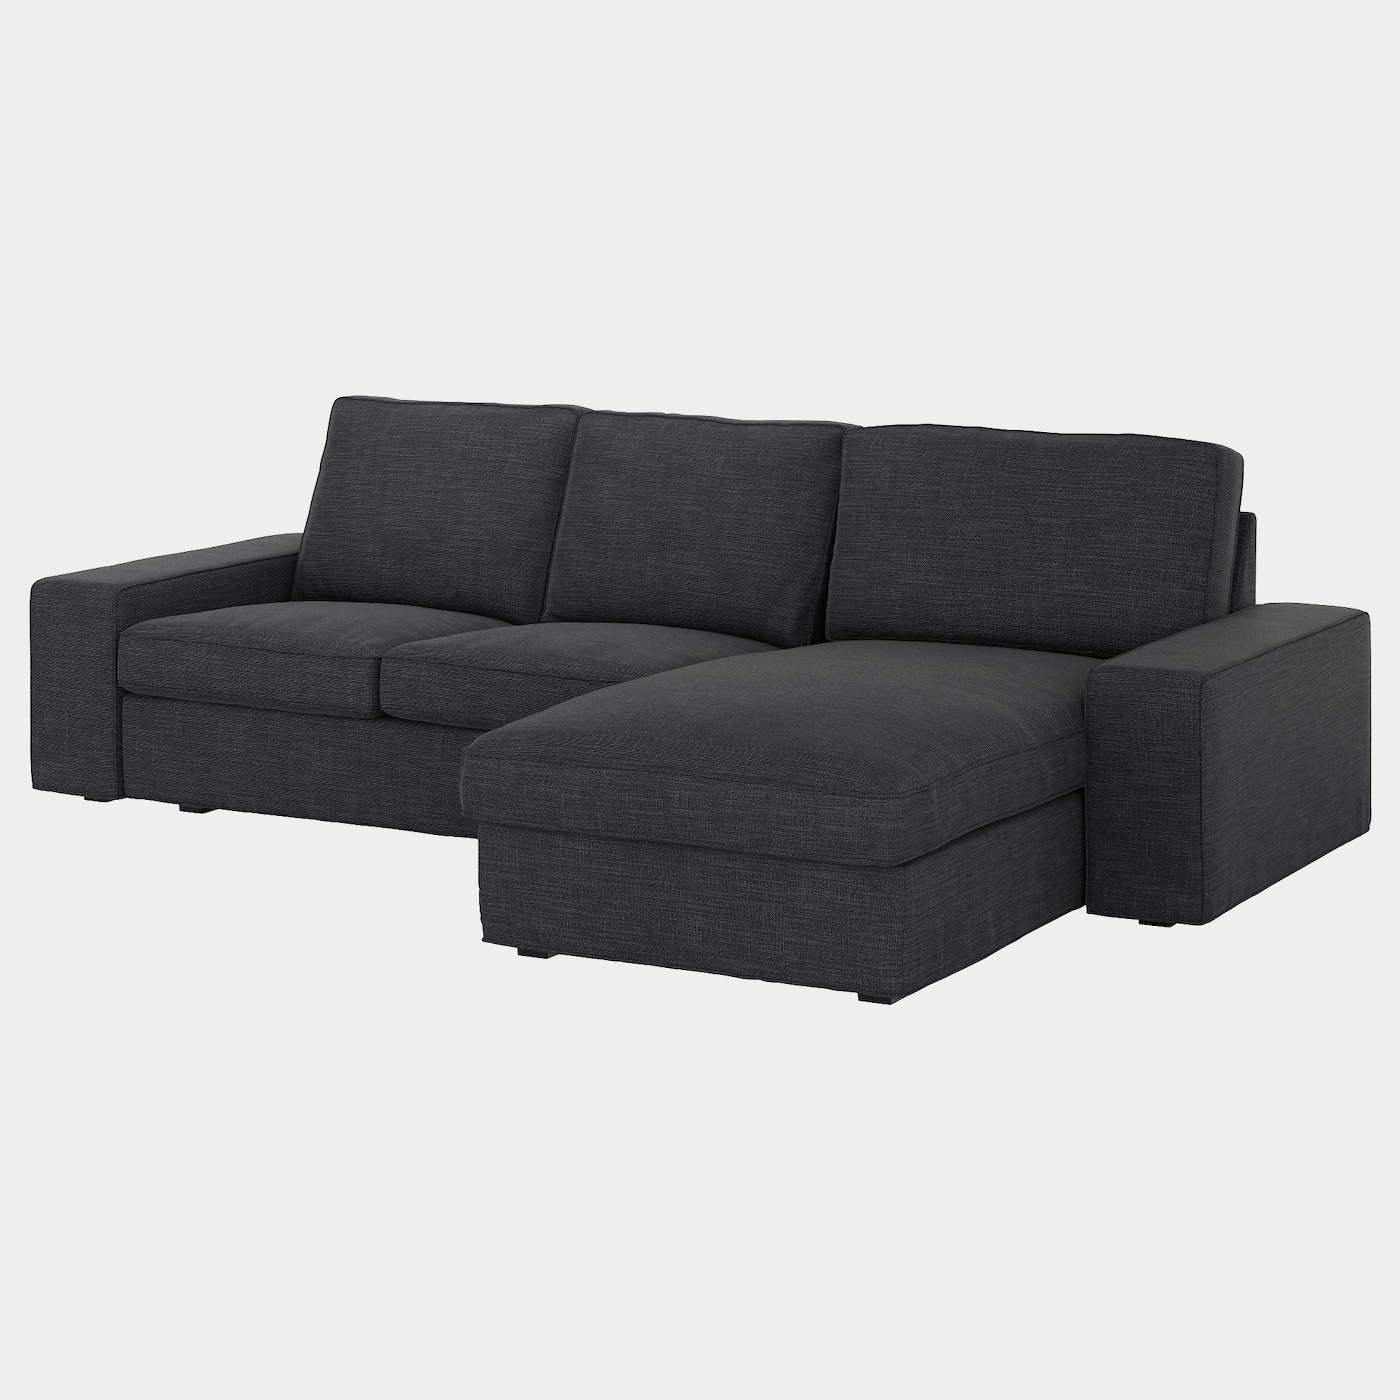 KIVIK 3er-Sofa  - Sofas, Textil - Möbel Ideen für dein Zuhause von Home Trends. Möbel Trends von Social Media Influencer für dein Skandi Zuhause.